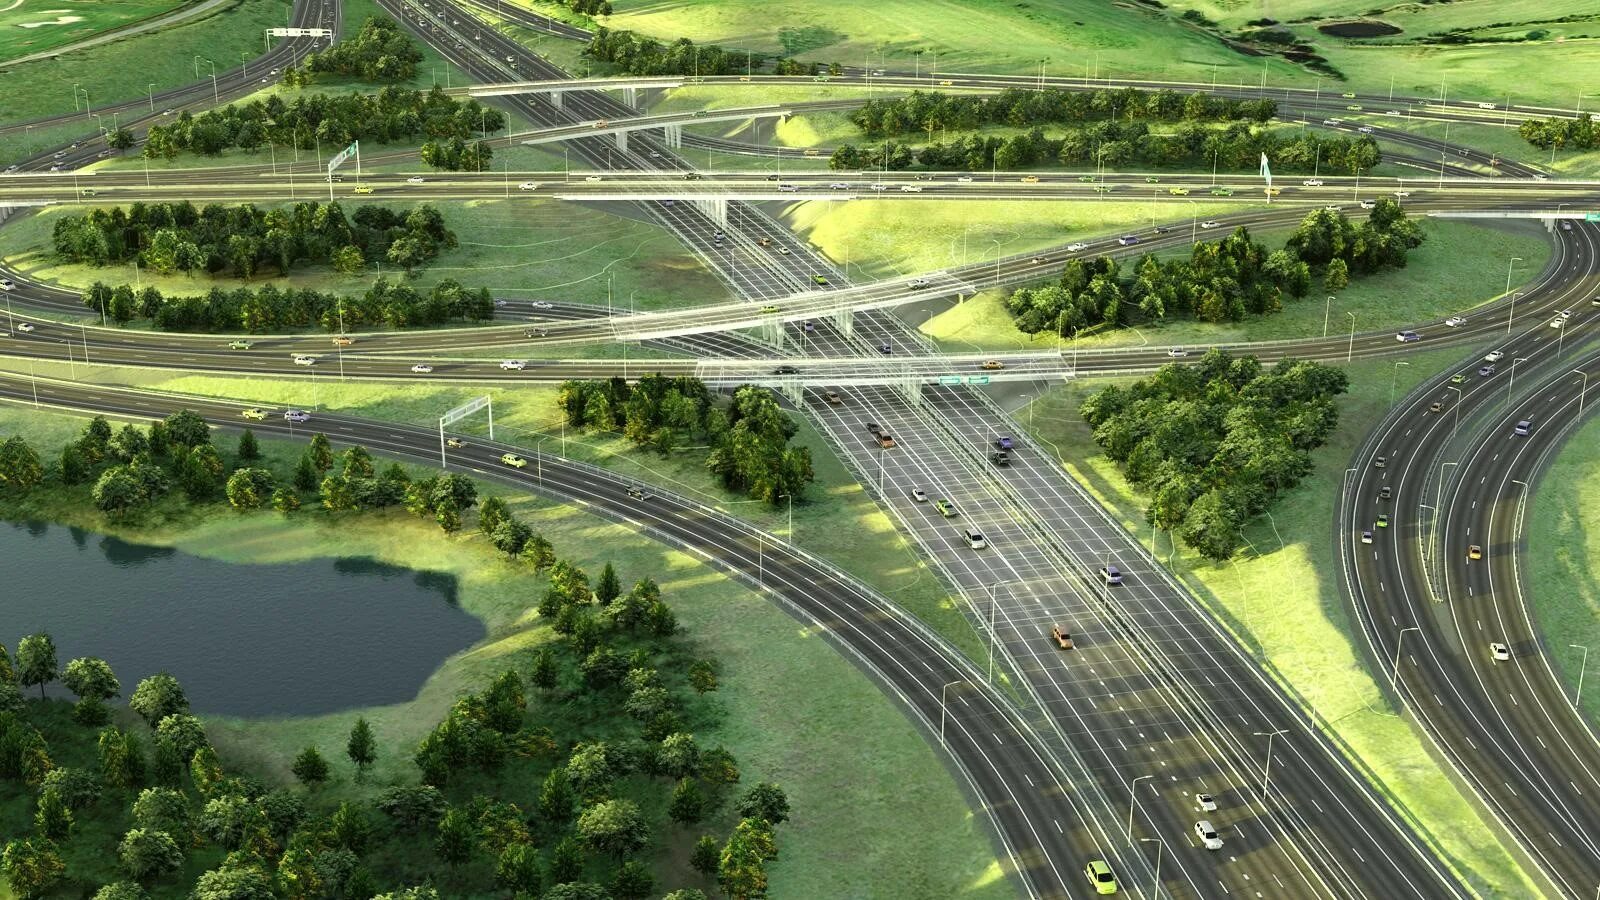 Функции строительства дорог. Проектирование дороги. Транспортная инфраструктура. Озеленение автомобильных дорог. Дорожно-транспортная инфраструктура.